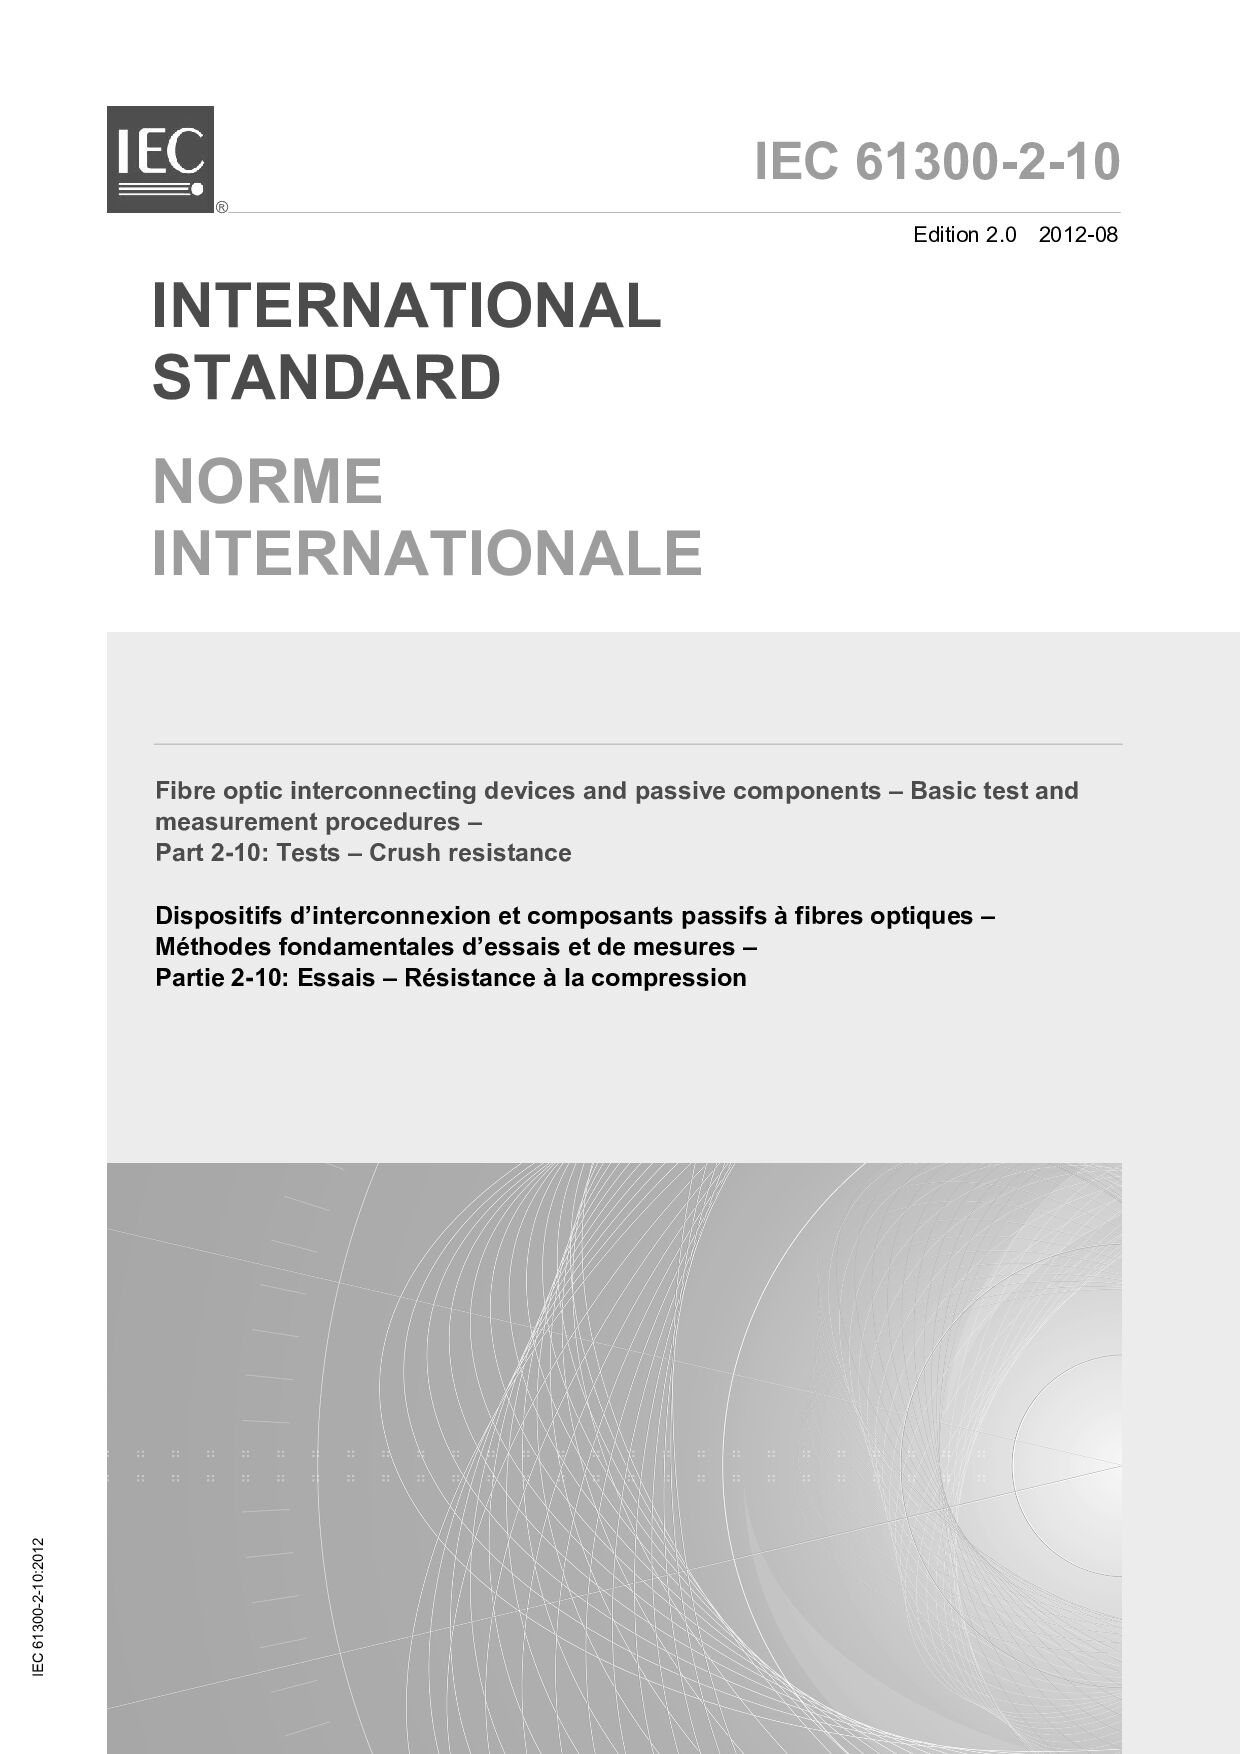 IEC 61300-2-10:2012